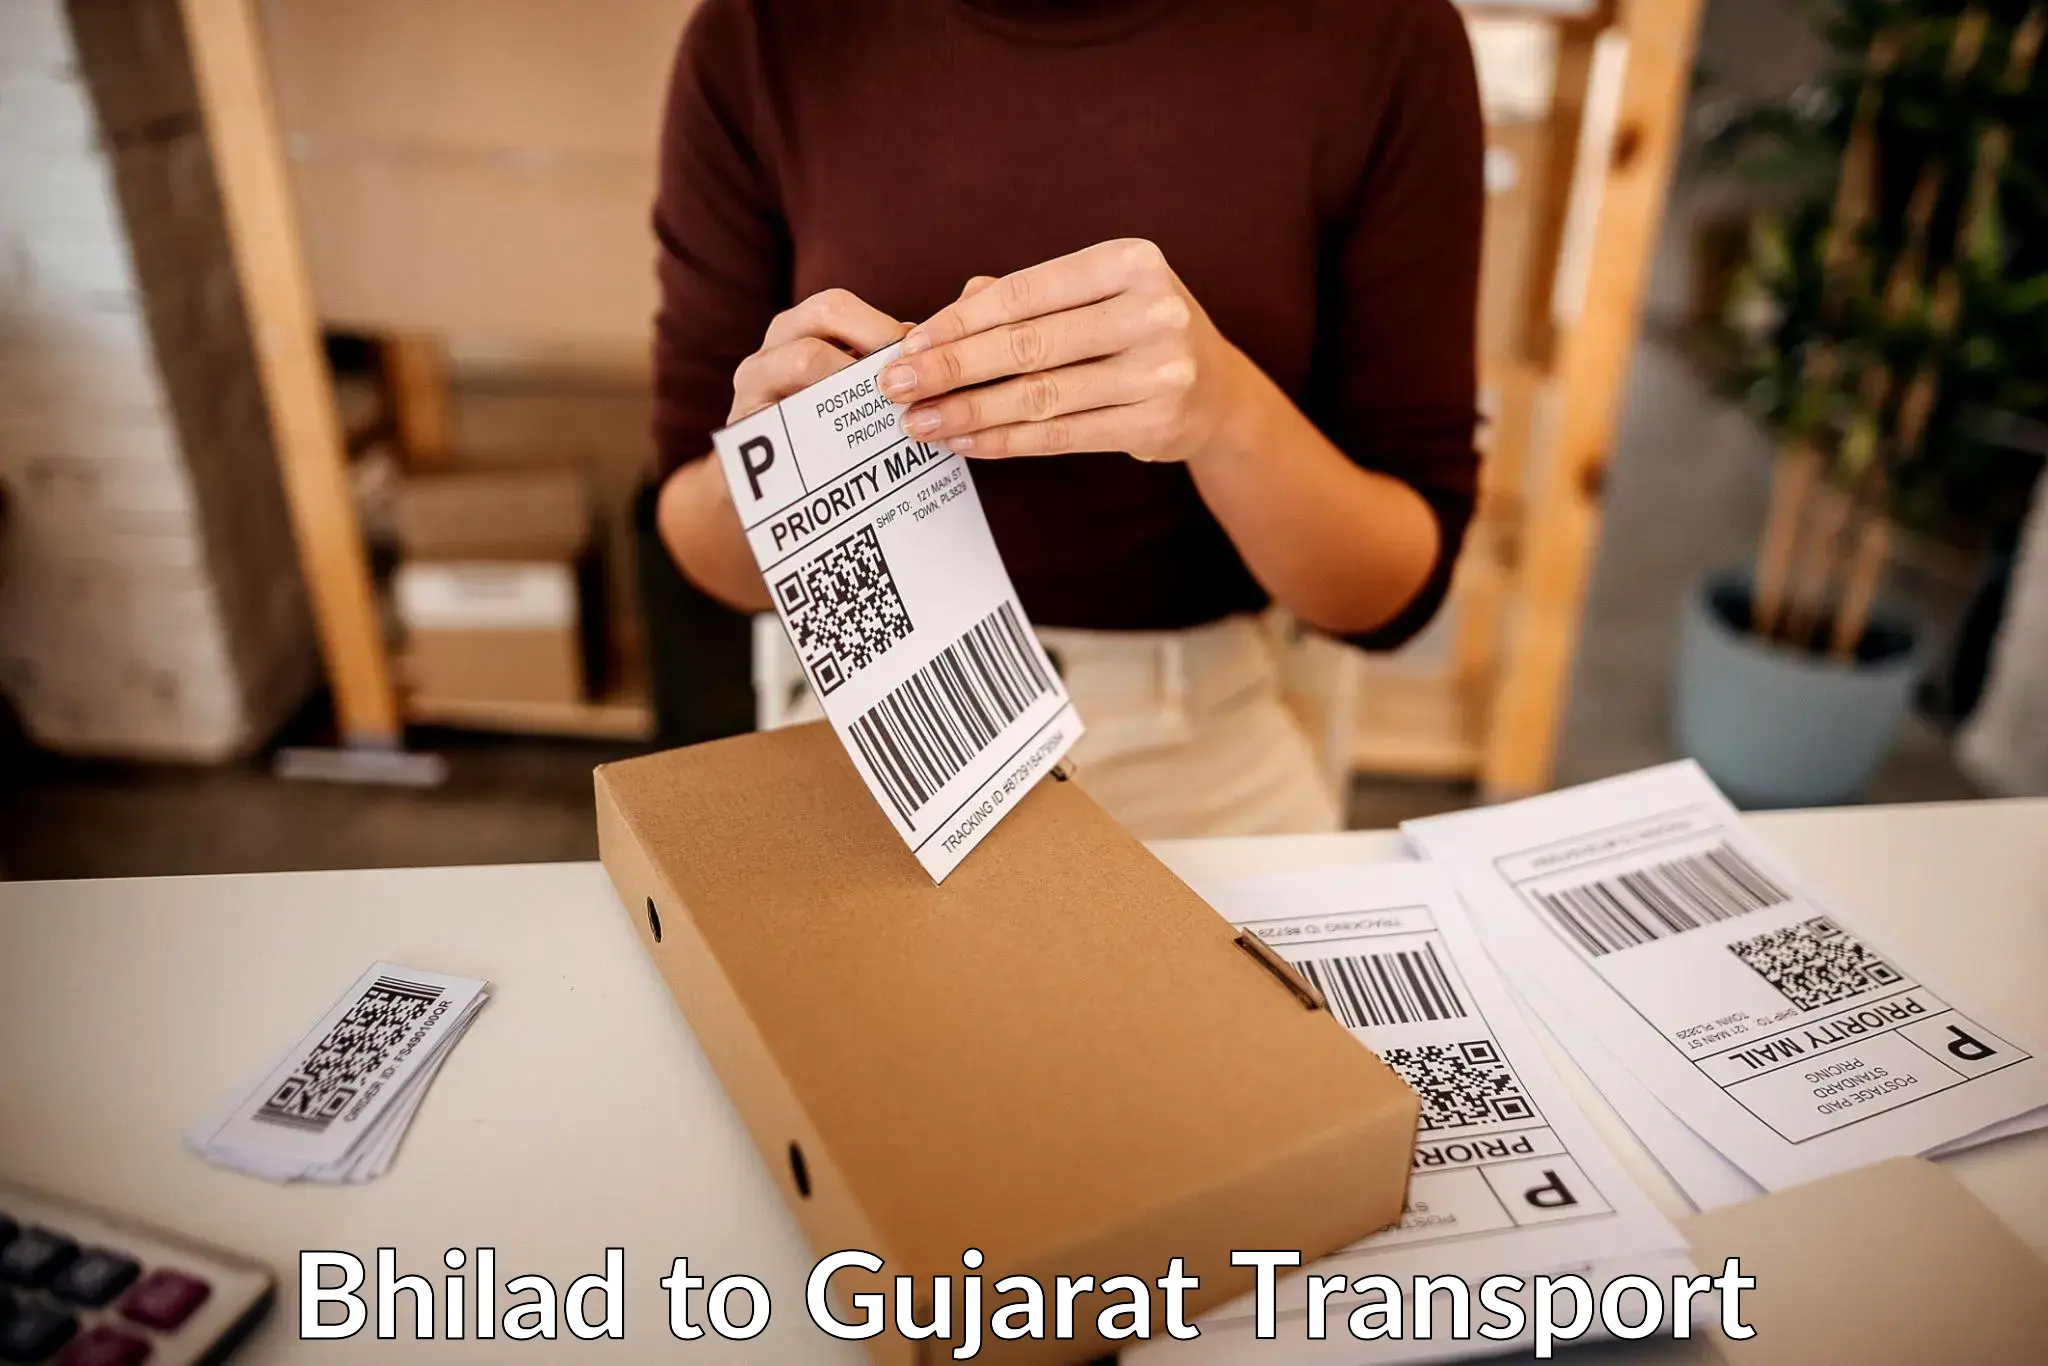 Goods delivery service Bhilad to Bhilad